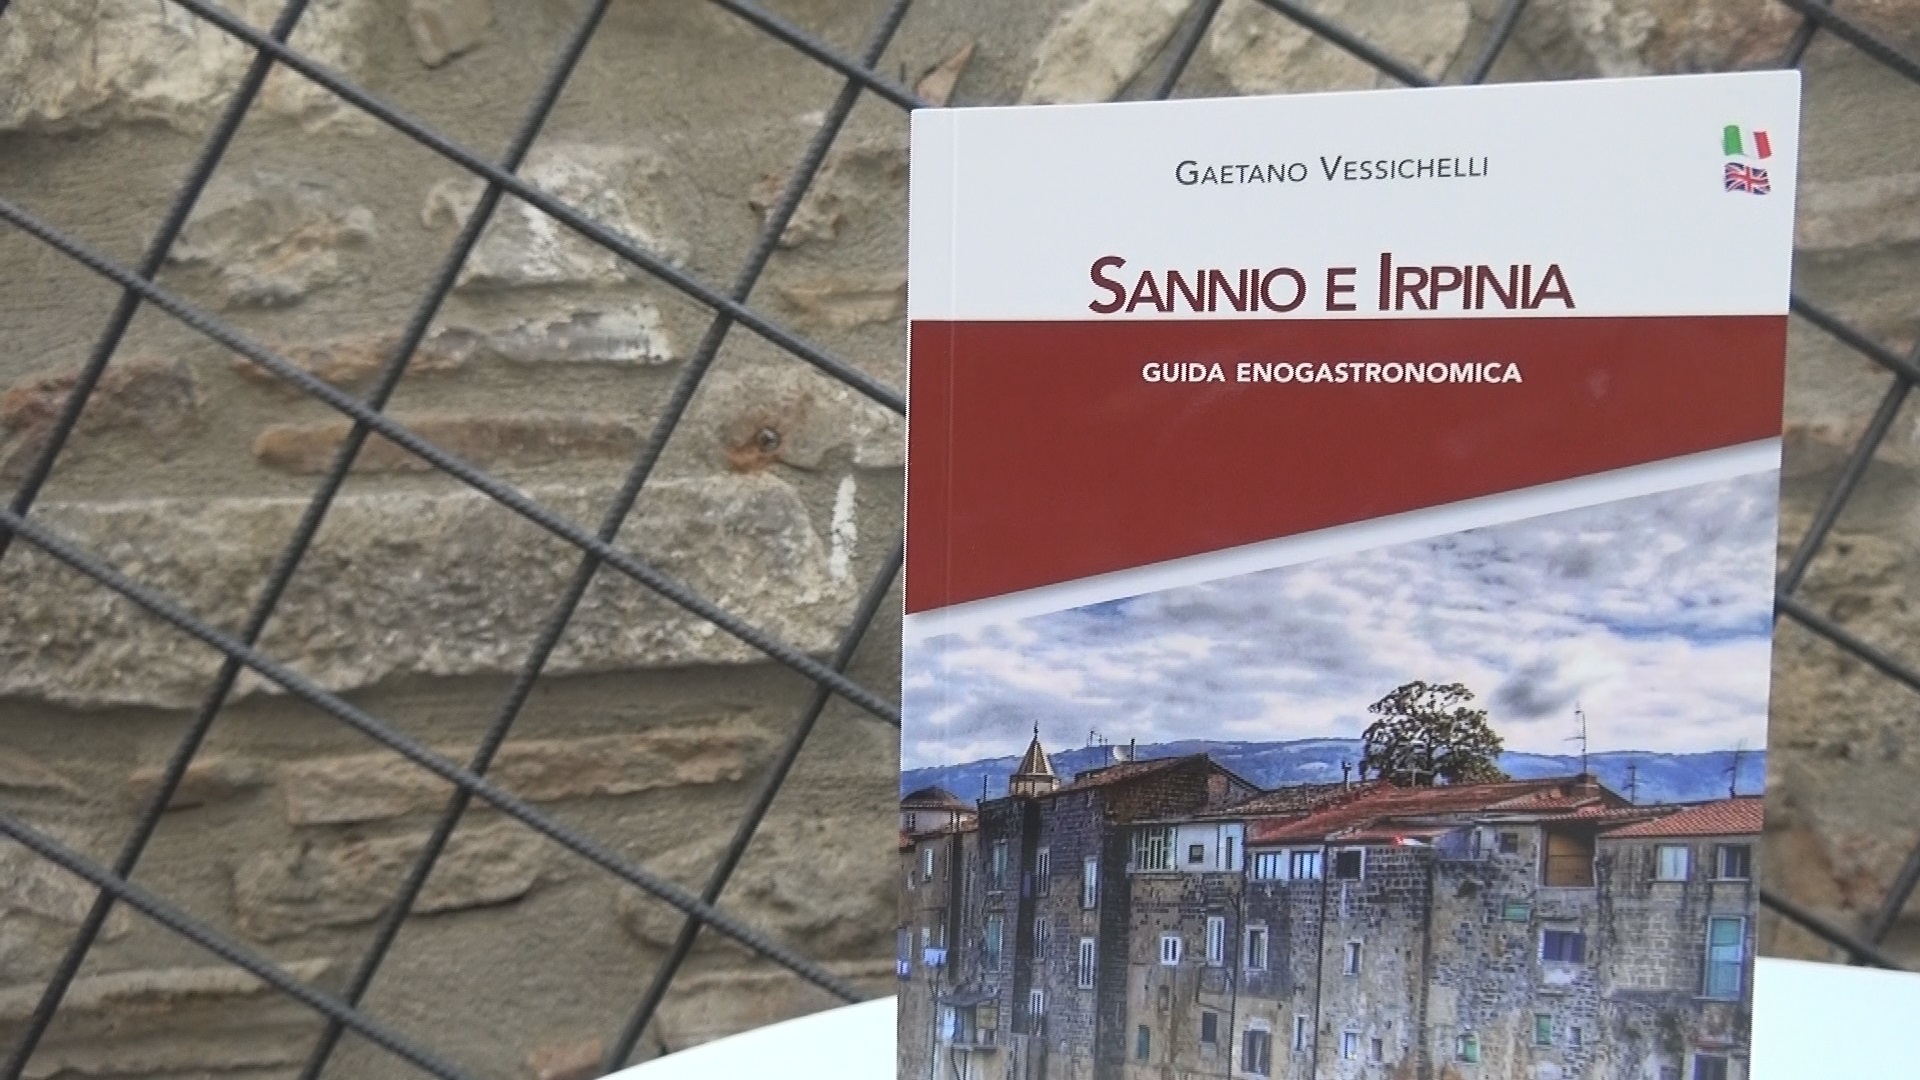 Benevento| Gaetano Vessichelli presenta Sannio e Irpinia, guida enogastronomica